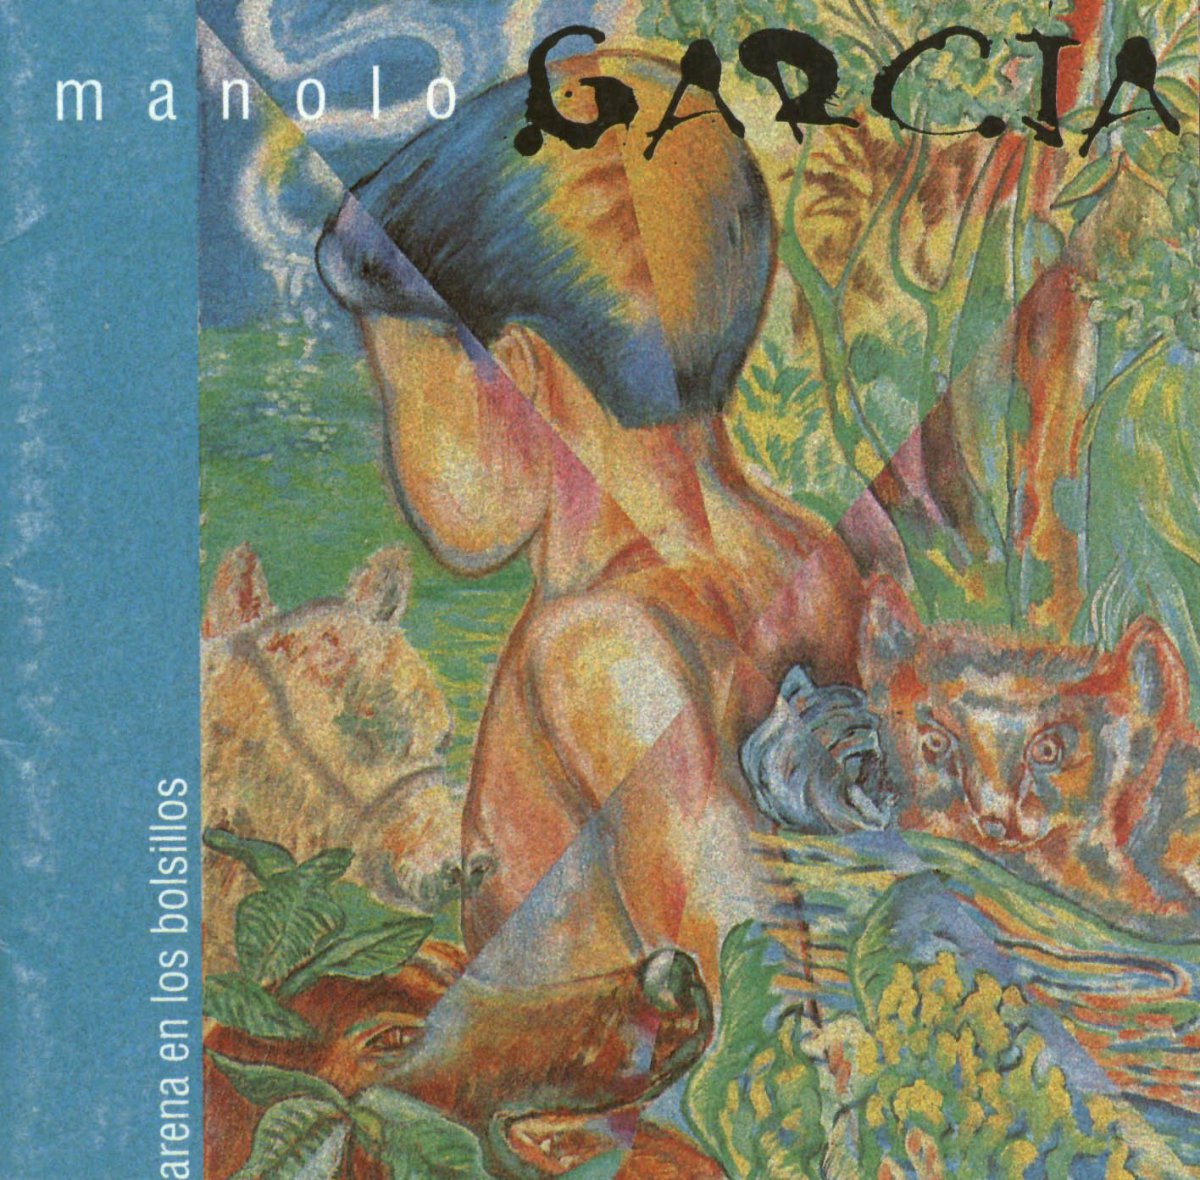 Manolo García – ‘Arena en los bolsillos’ (4 de mayo de 1998)